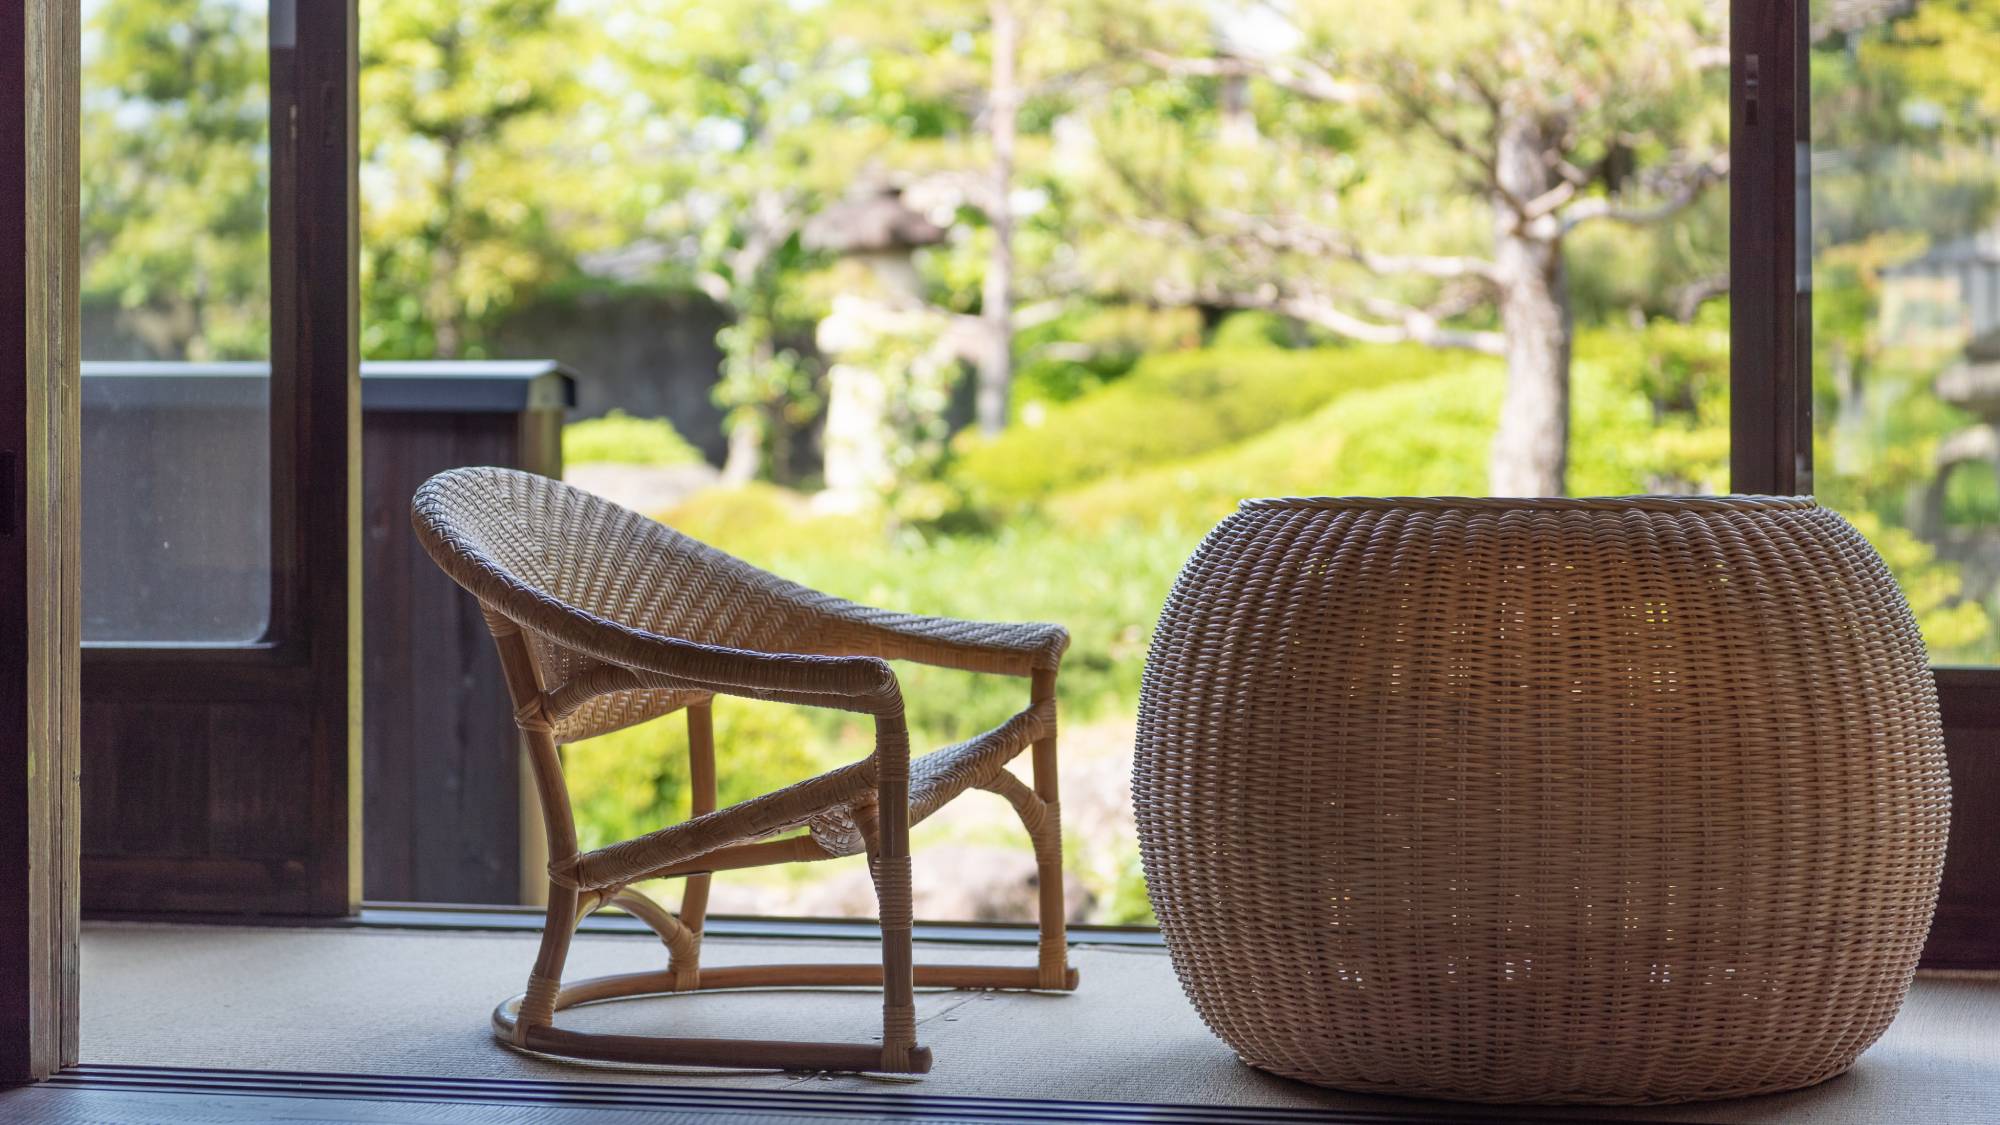 【離れ】お庭の見える窓のそばに籐製の椅子を2脚・ローテーブルを1台設置しております。